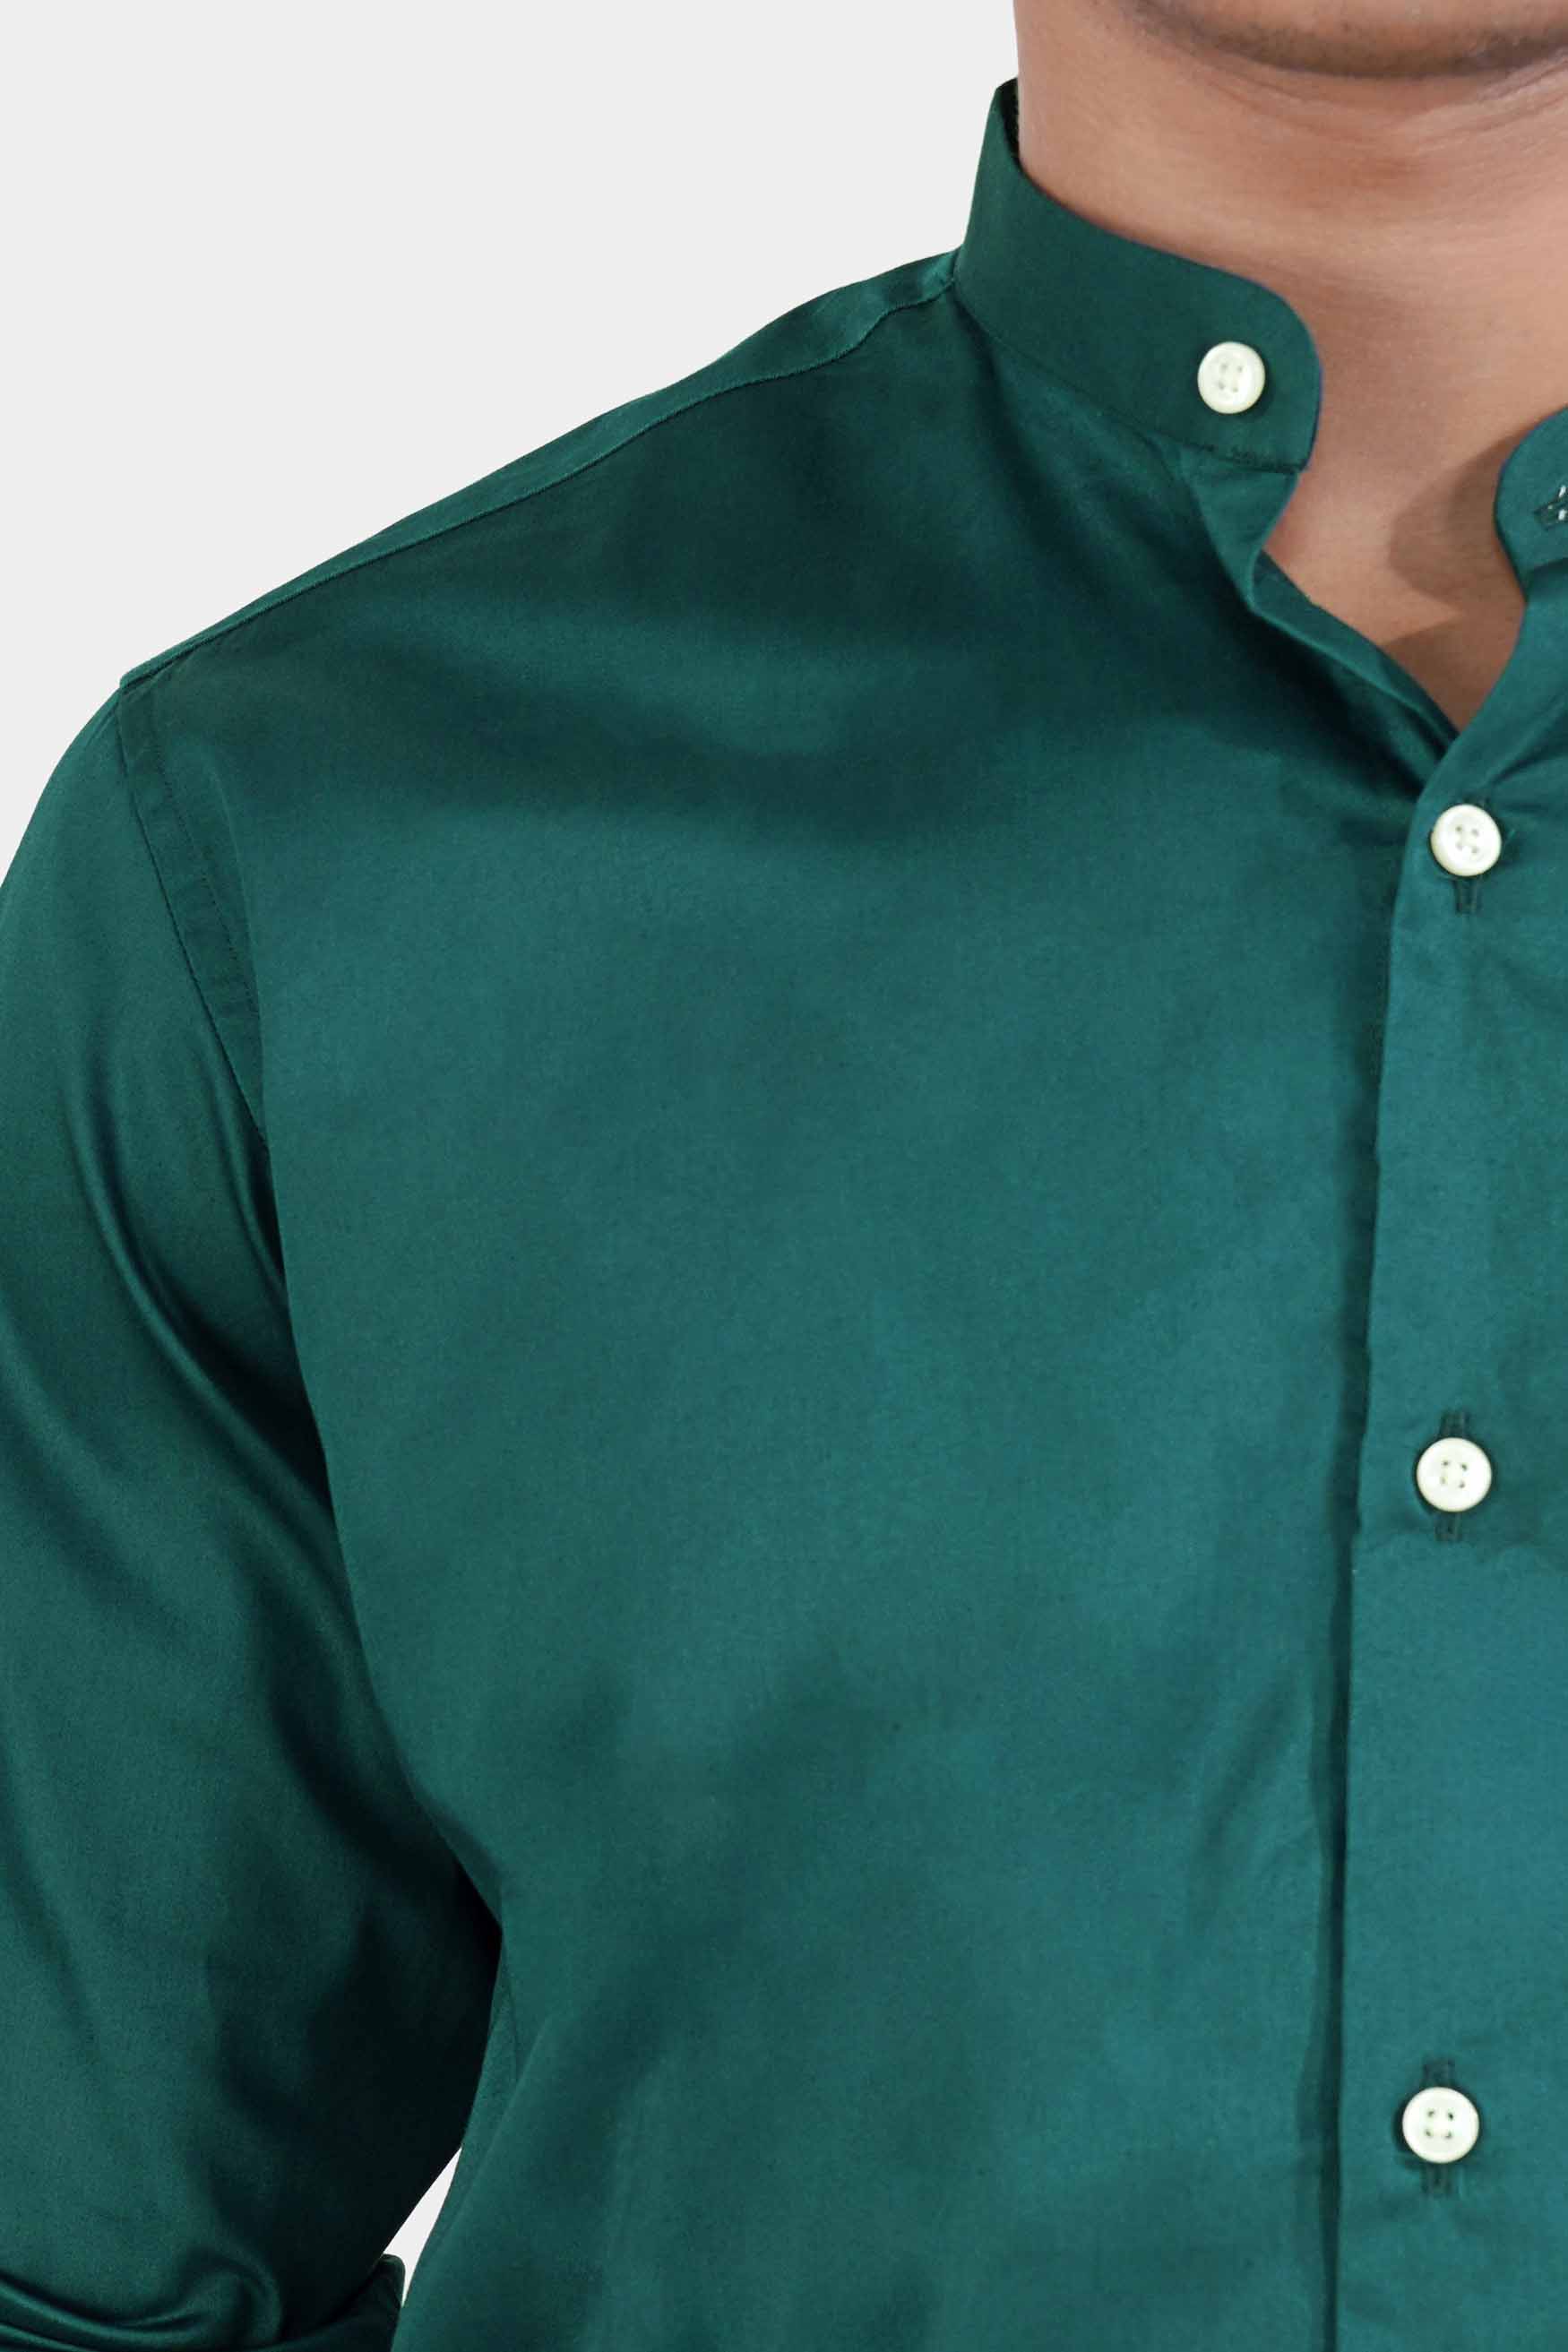 Teal Green Subtle Sheen Super Soft Premium Cotton Mandarin Shirt